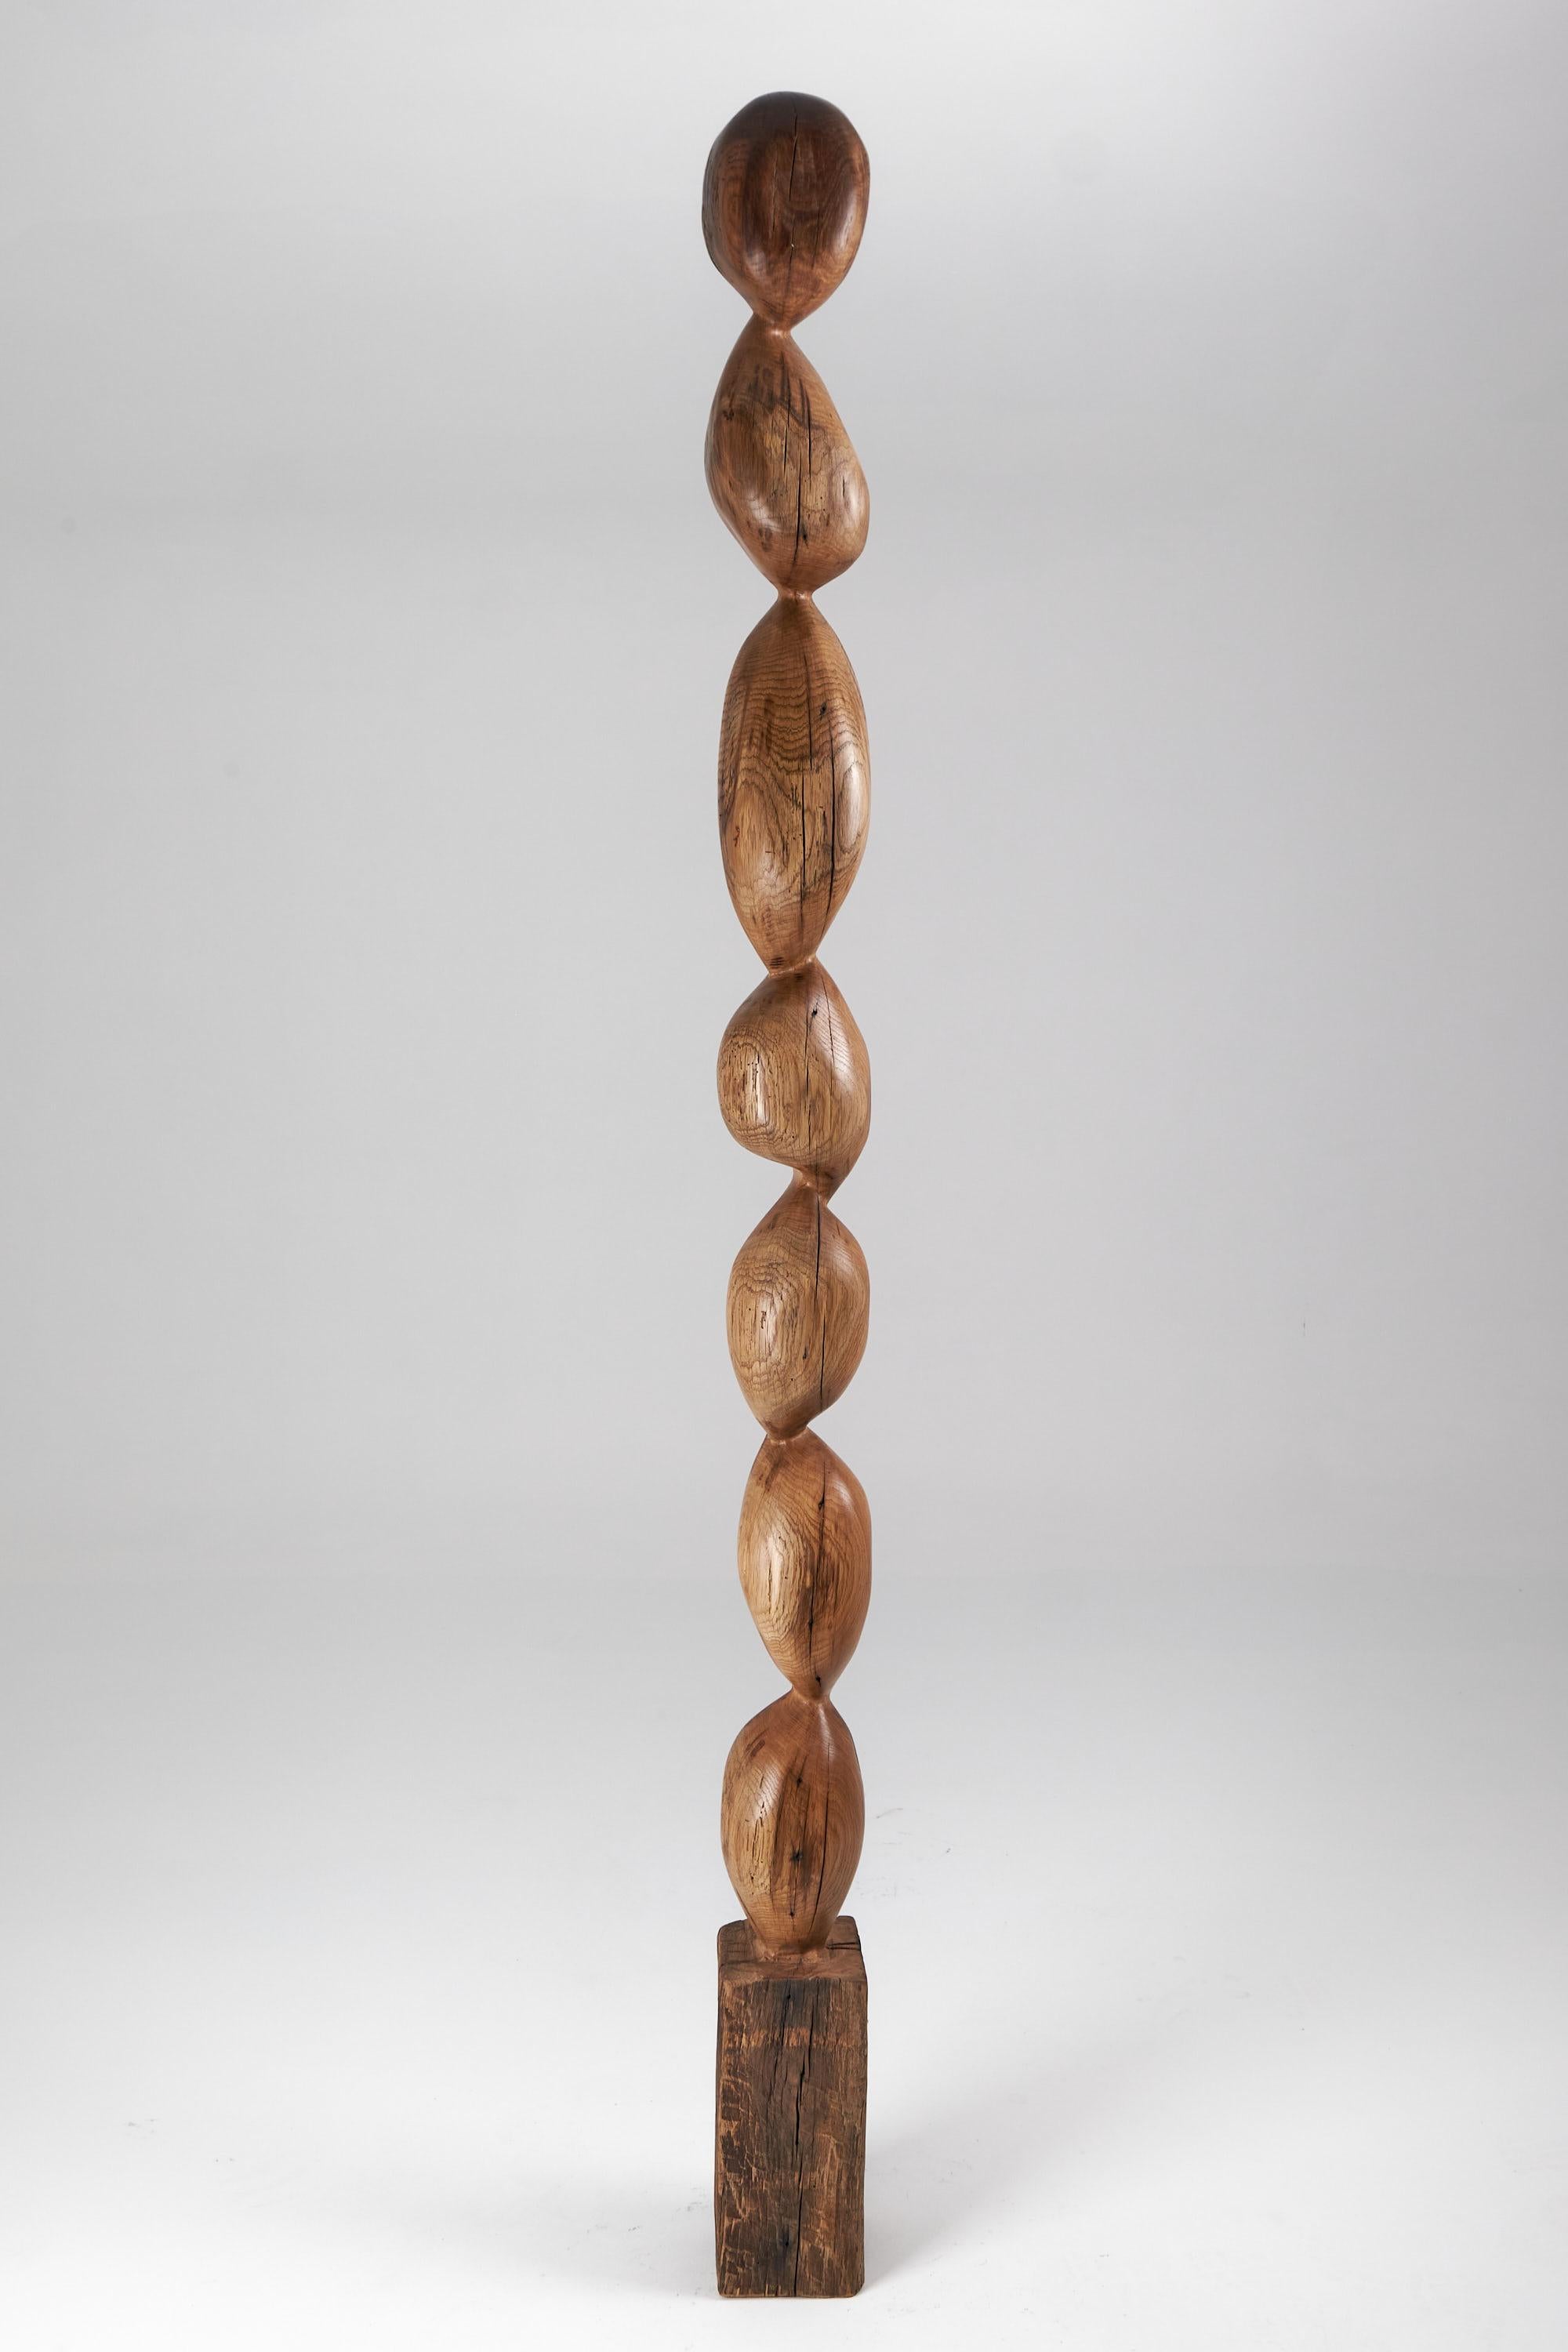 Still Stand Sculpture abstraite biomorphique en bois, sculptée à la tronçonneuse à partir d'une seule pièce de bois de chêne